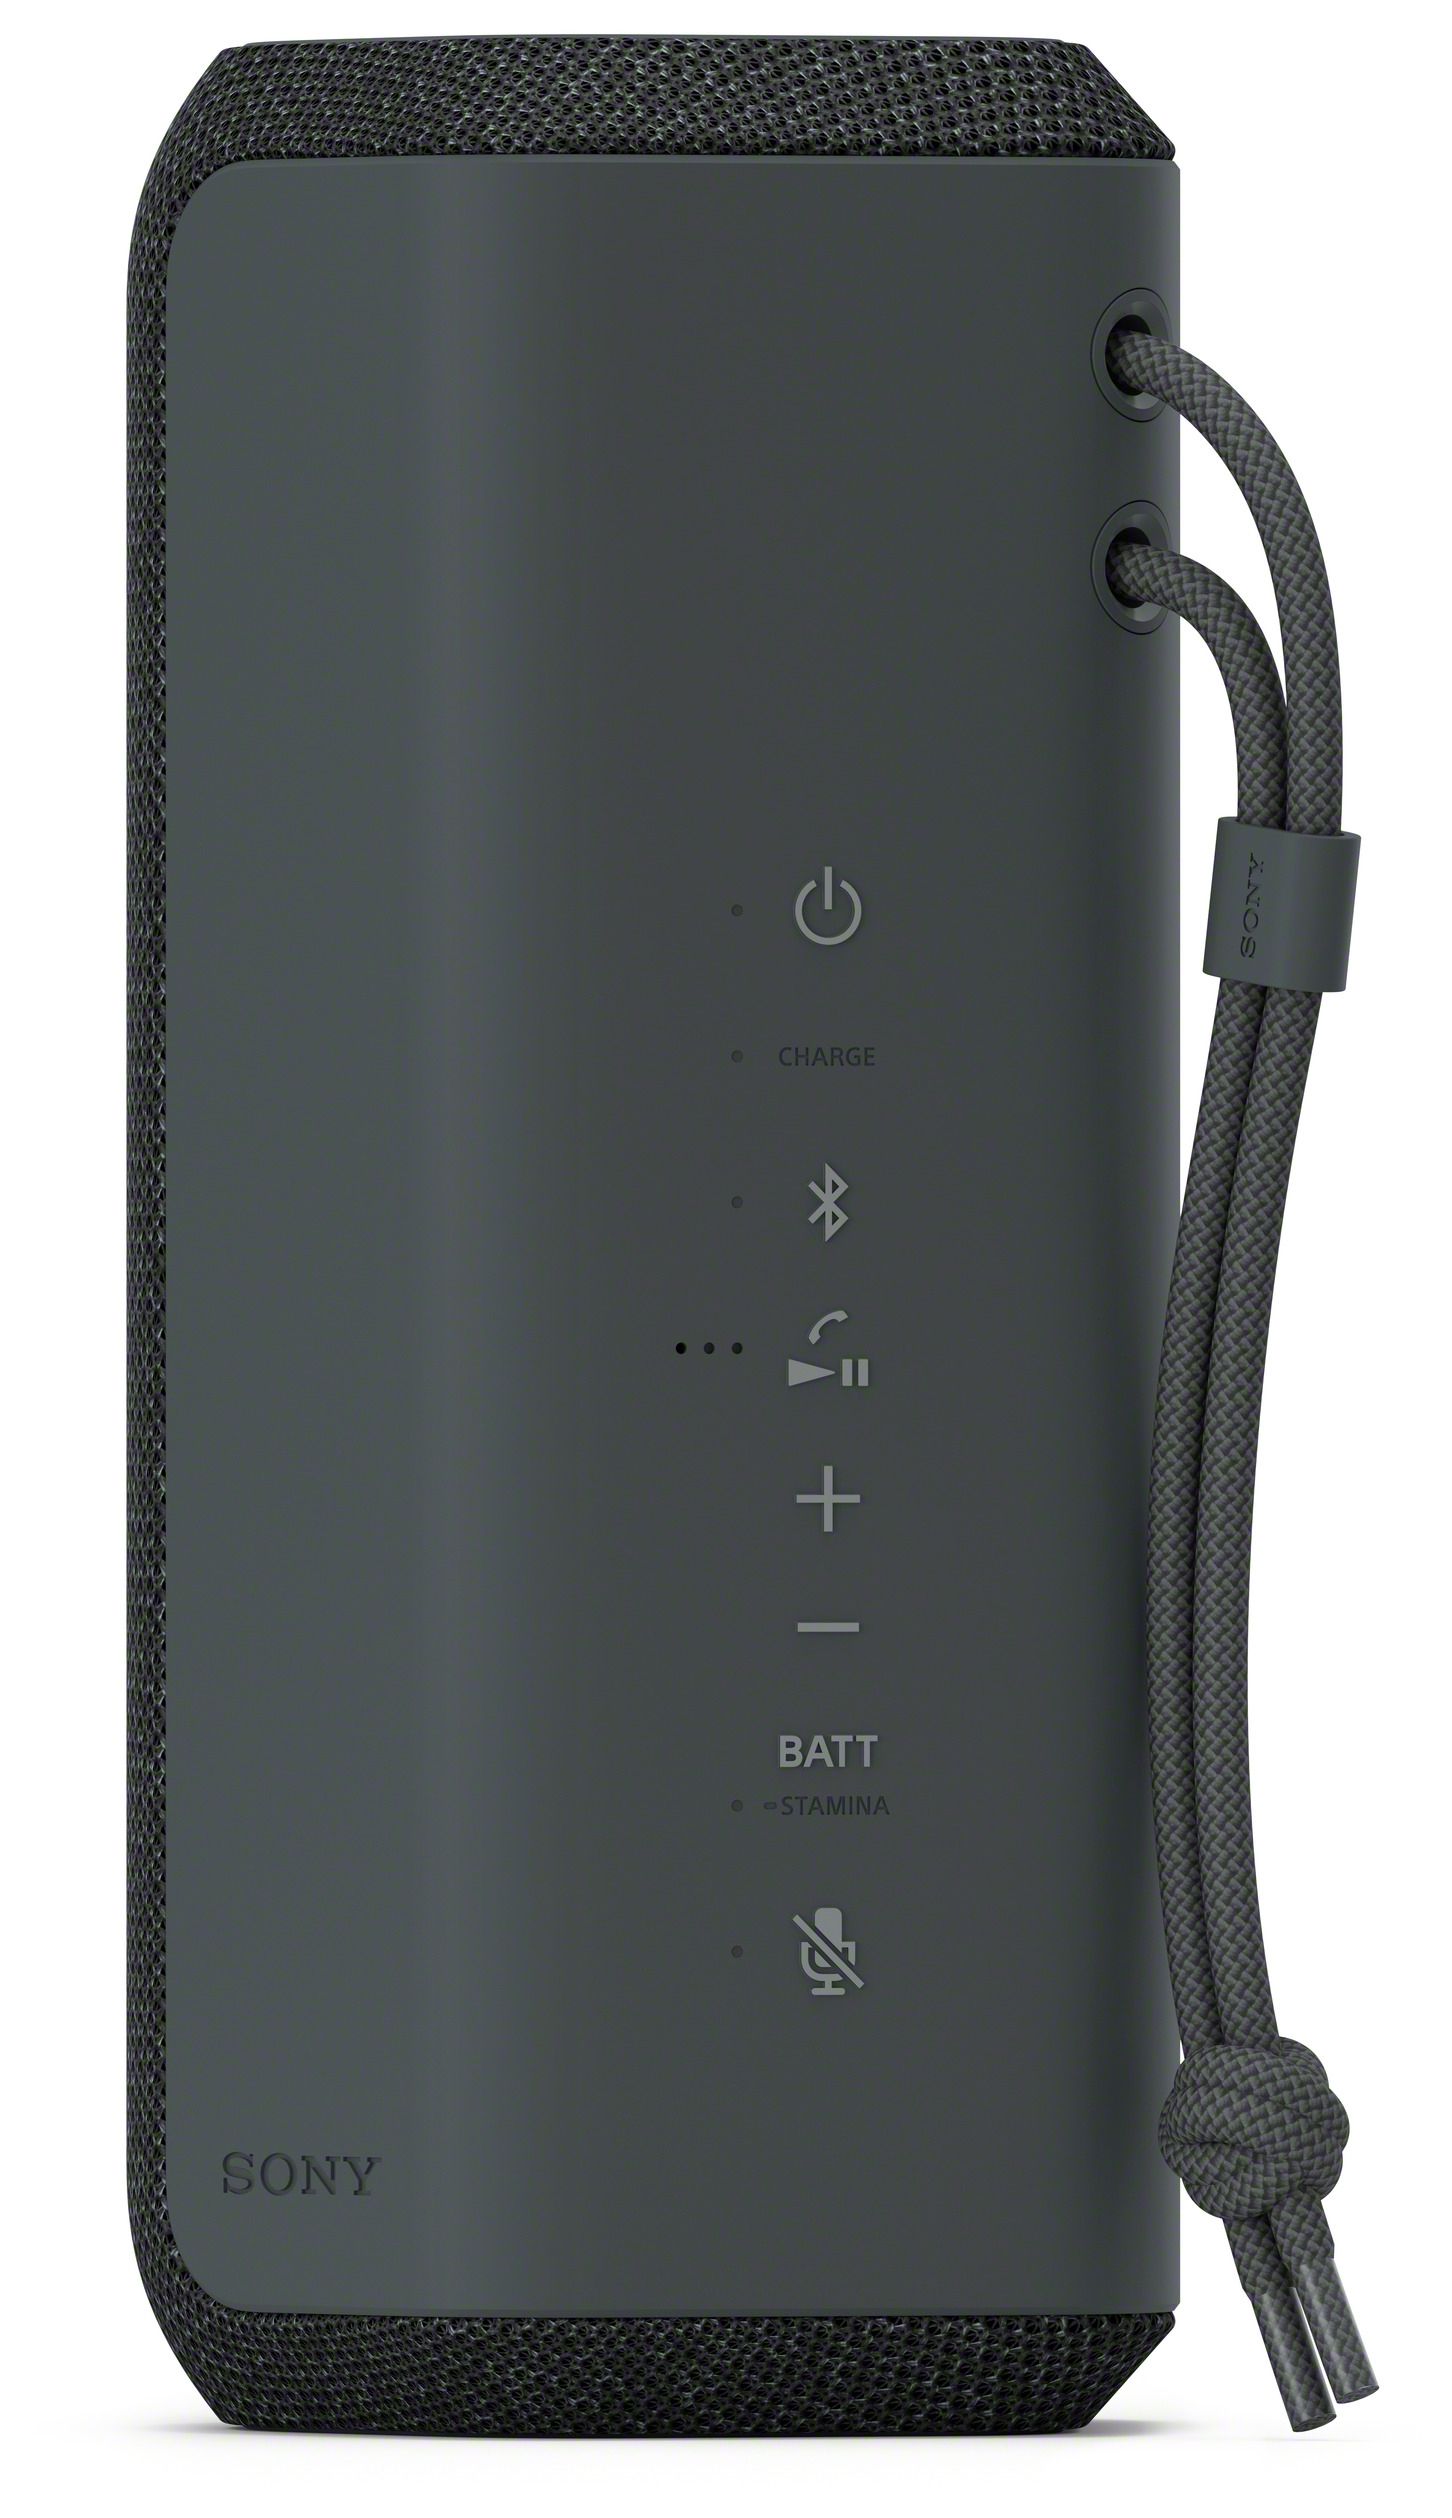 Sony SRS-XE200 Bluetooth expert von Lautsprecher IP67 Technomarkt (Schwarz)